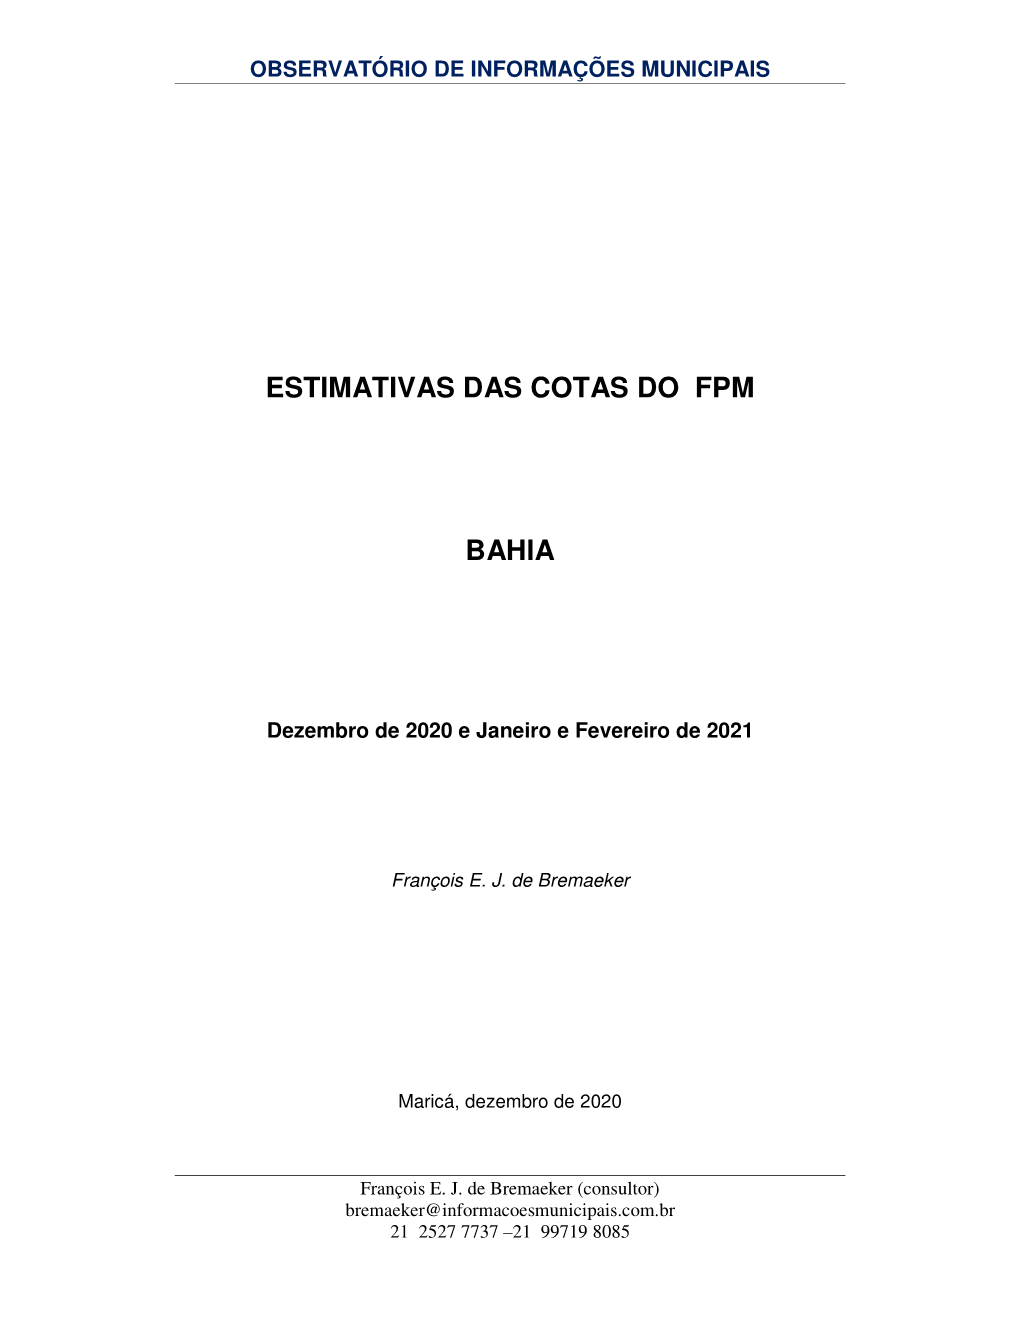 ESTIMATIVAS DAS COTAS DO FPM BAHIA -.. Observatório De